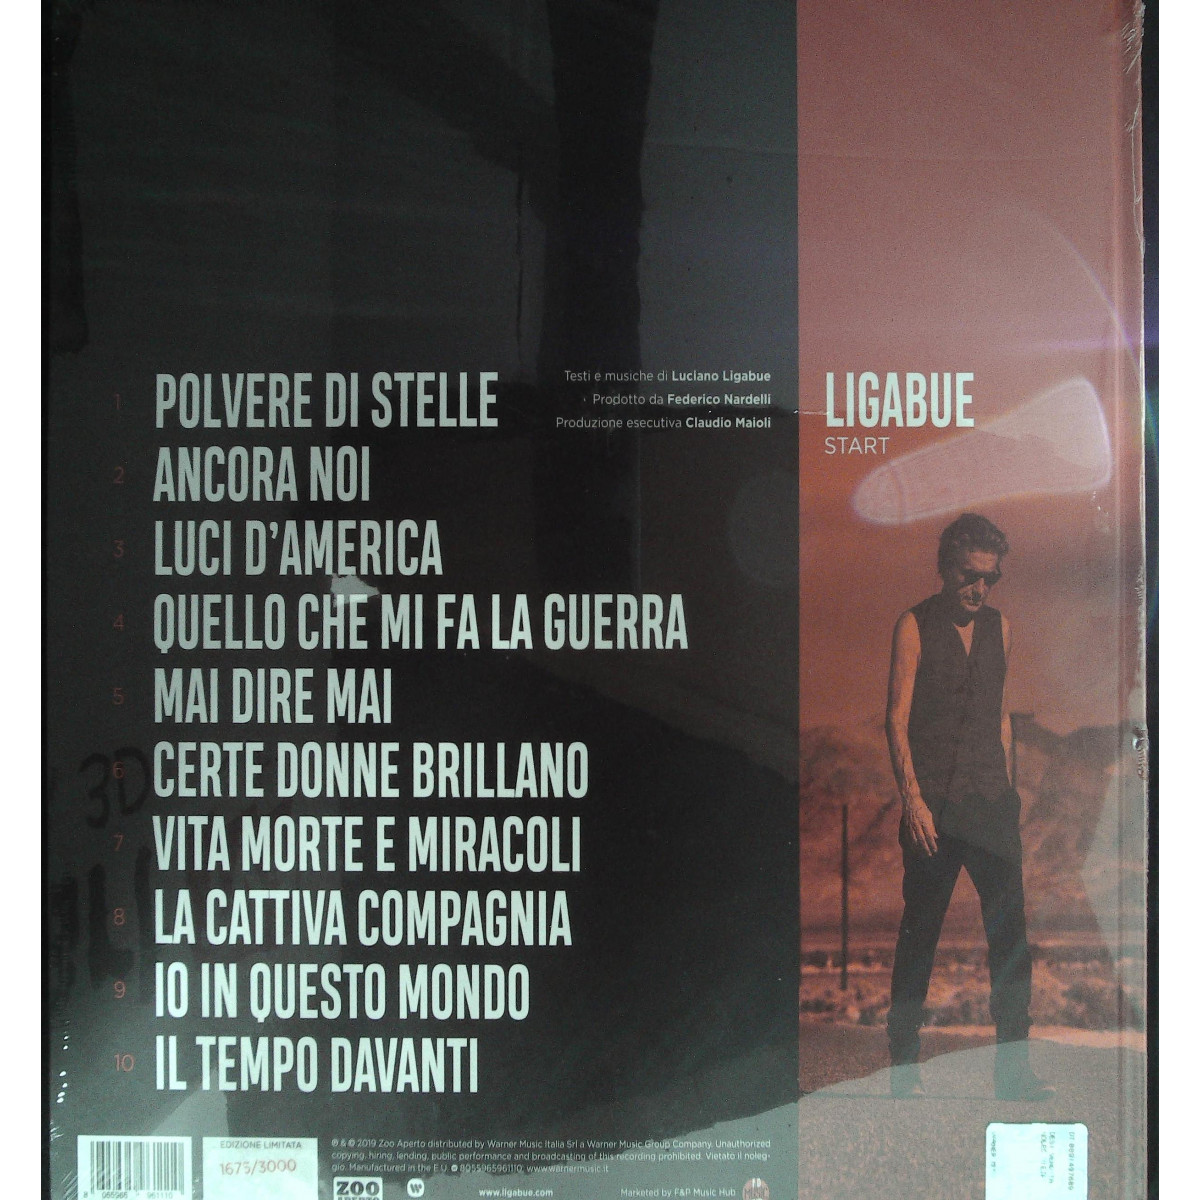 Ligabue Lp Vinile Rosso CD Photobook Start - Ed Limitata Numerata